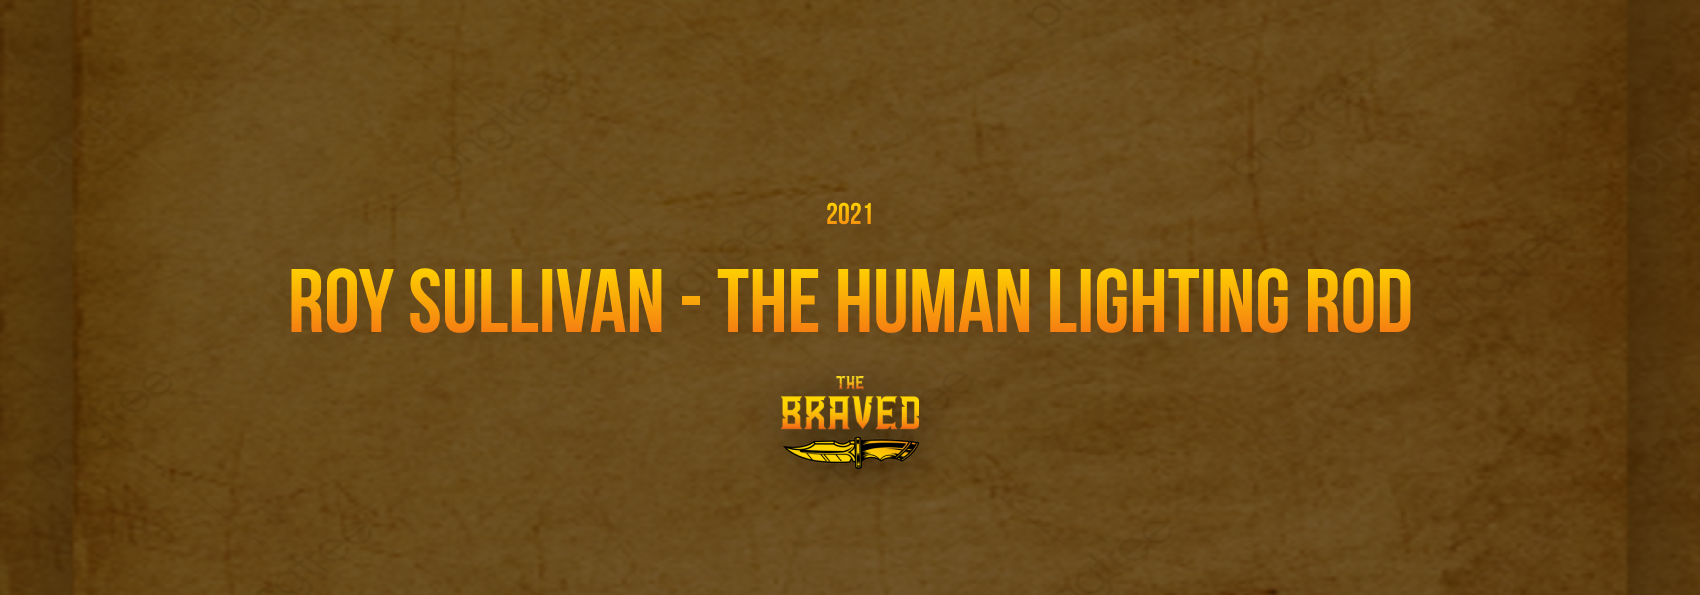 Roy Sullivan - The Human Lighting Rod